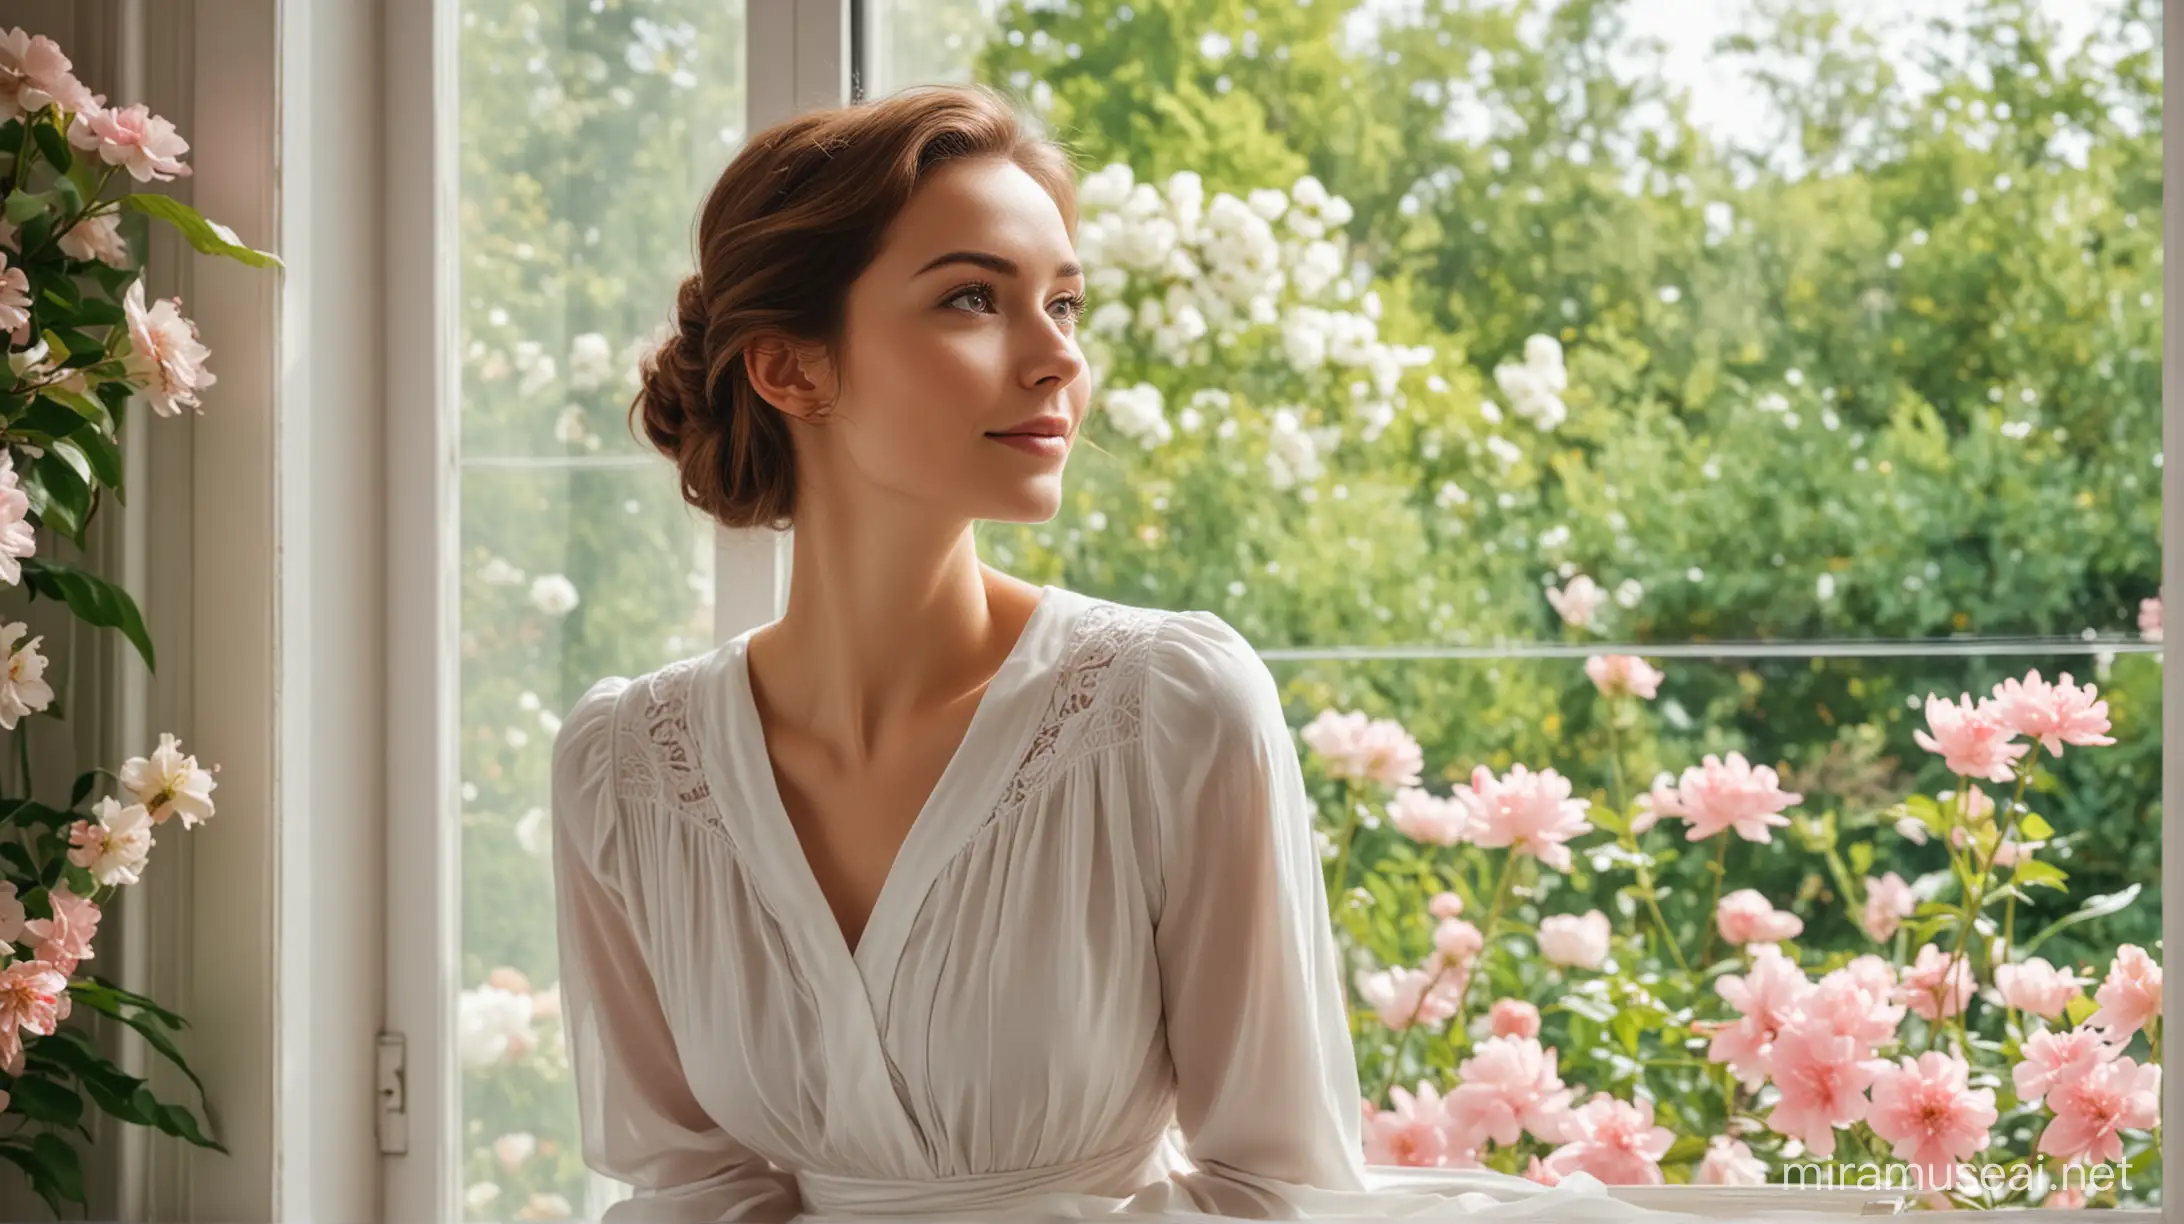 "нарисуй счастливую женщину и немного задумчивую в белом скромном платье, смотрящую в окно, выходящее в красивый цветущий сад"